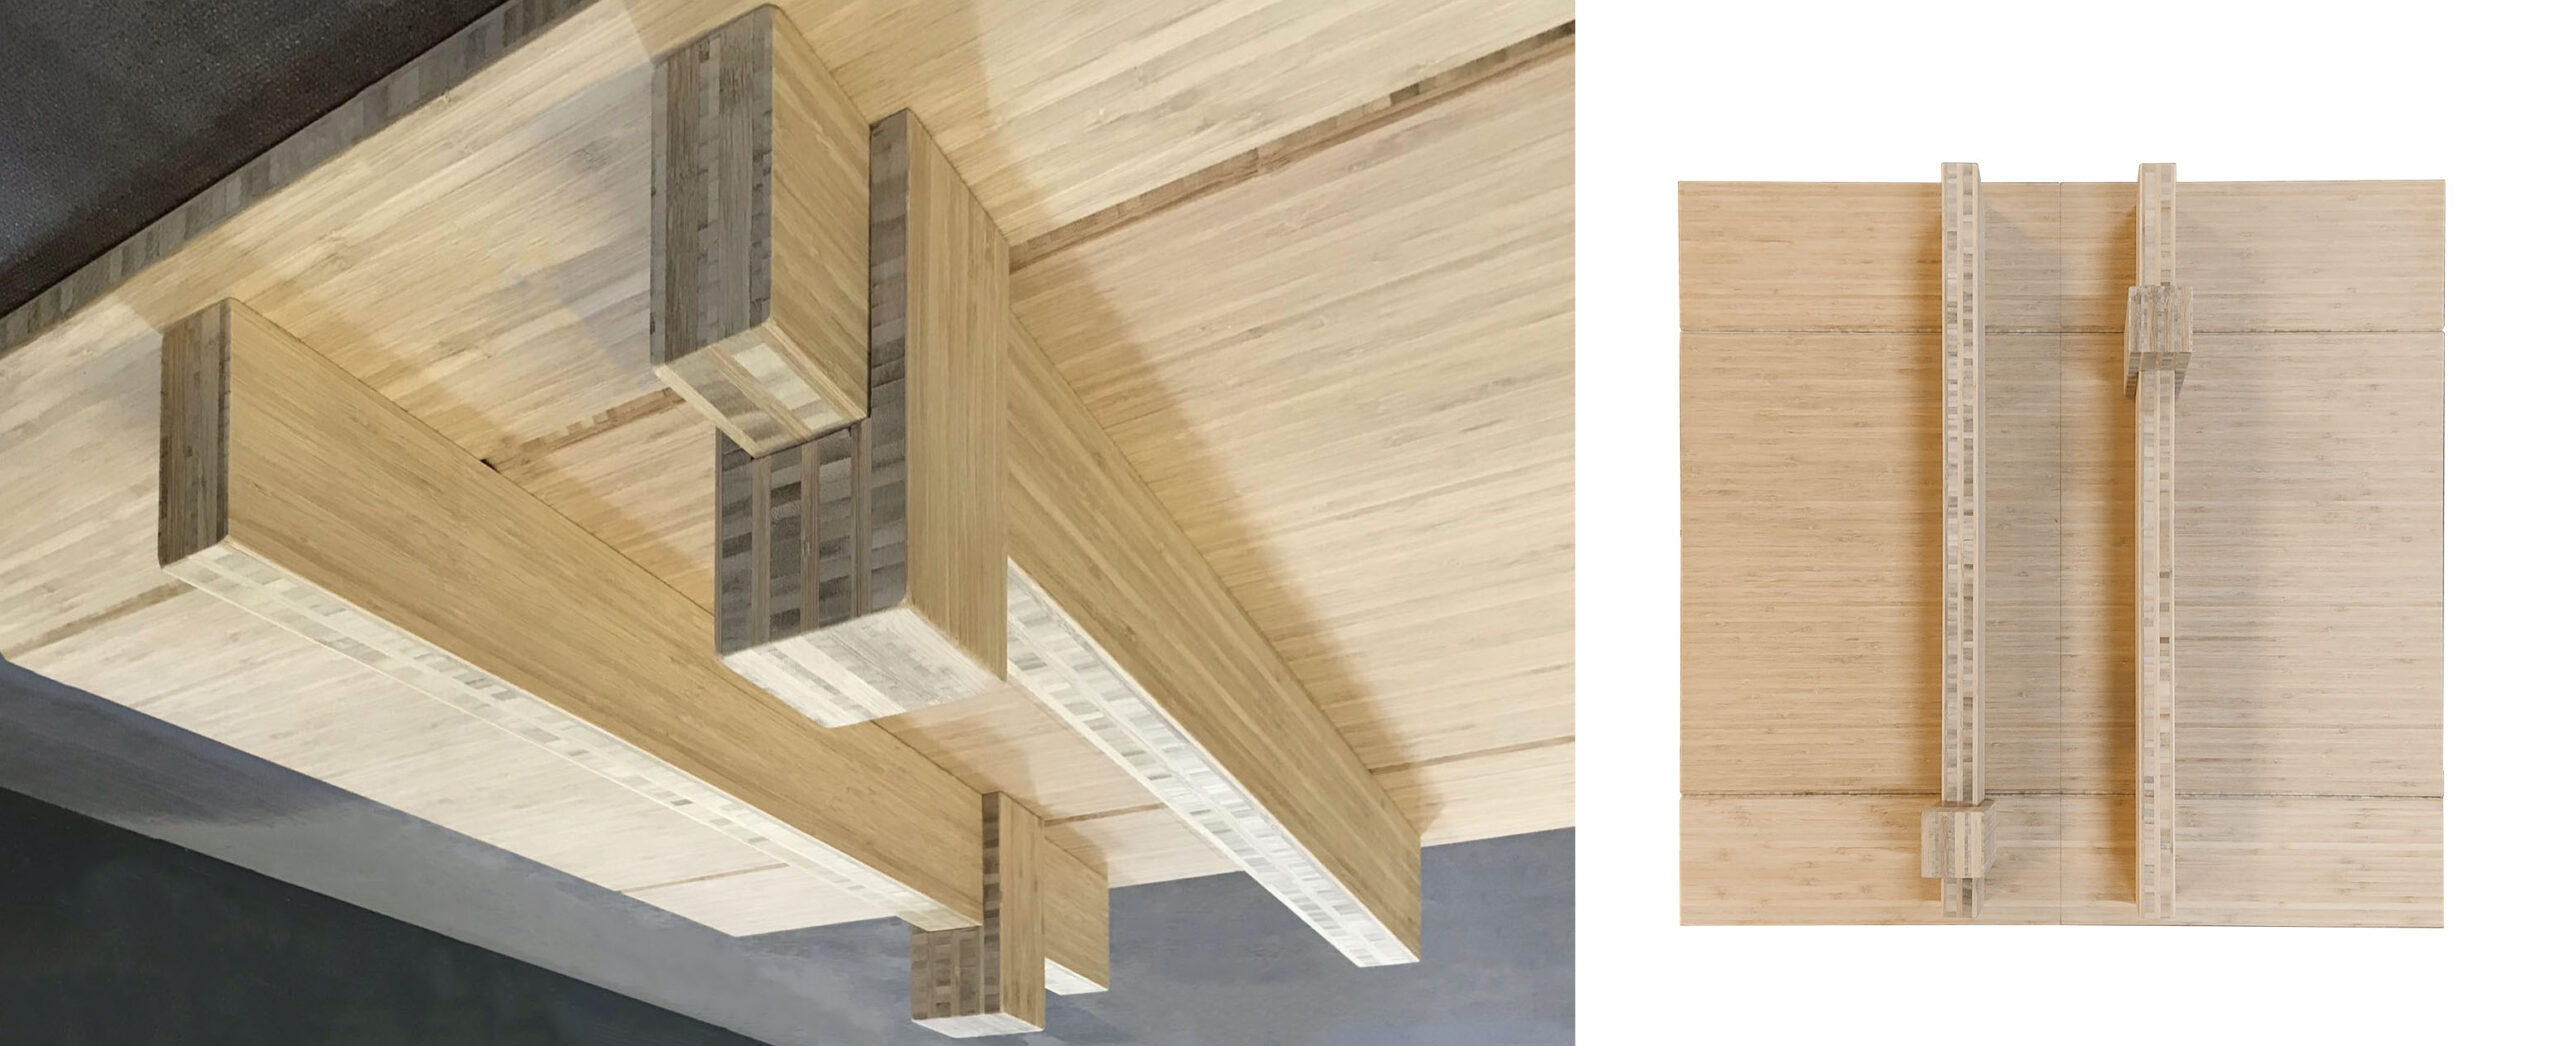 Maquetas y detalles para techo de madera en el Museo de la Fundación Dr. Leïla Mezian, obra conceptual de Kengo Kuma